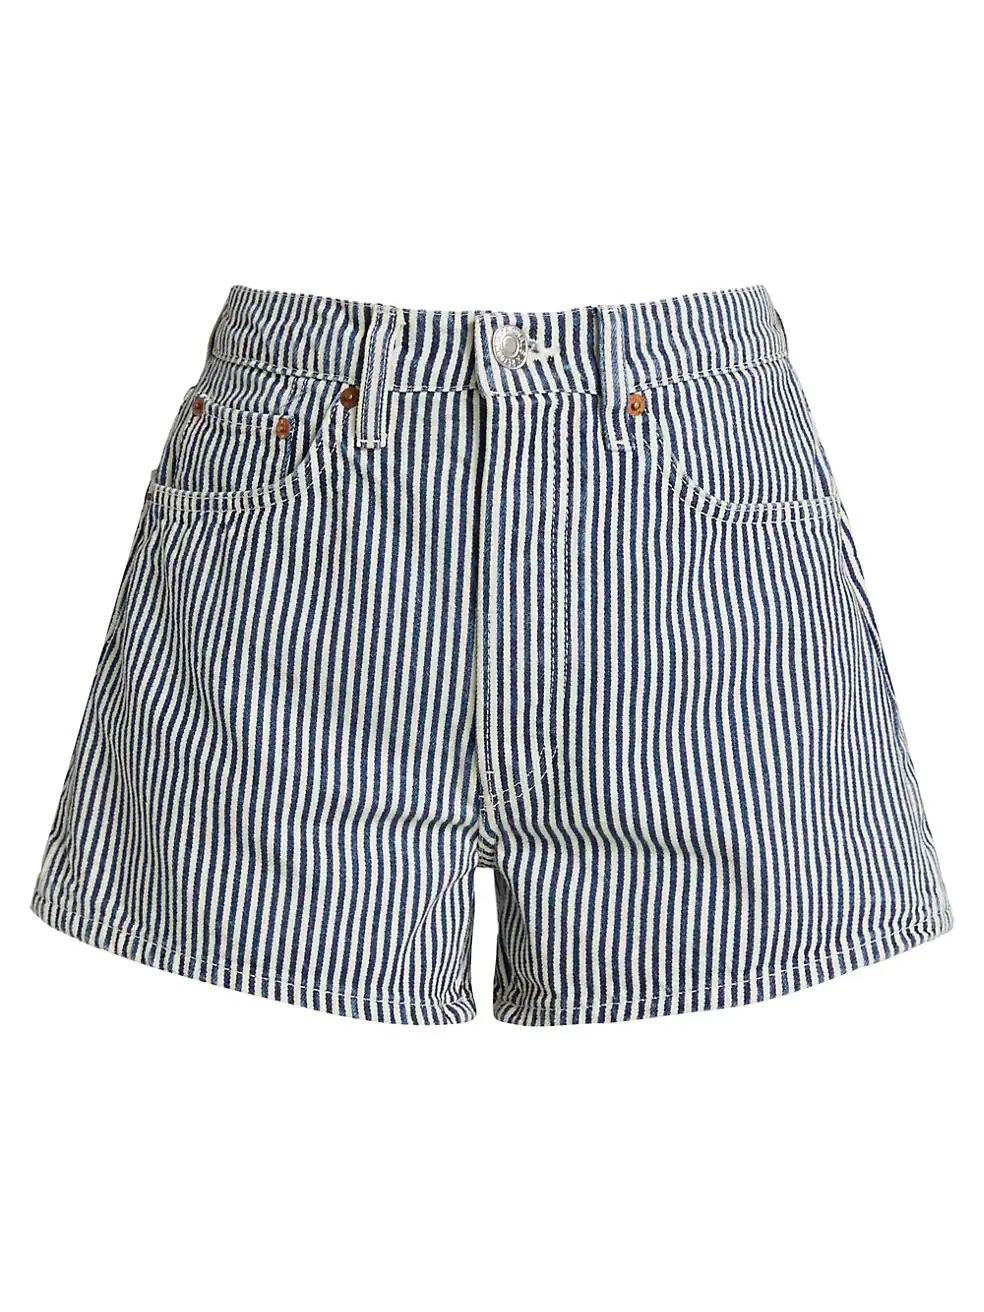 best fashion attire Summer shorts